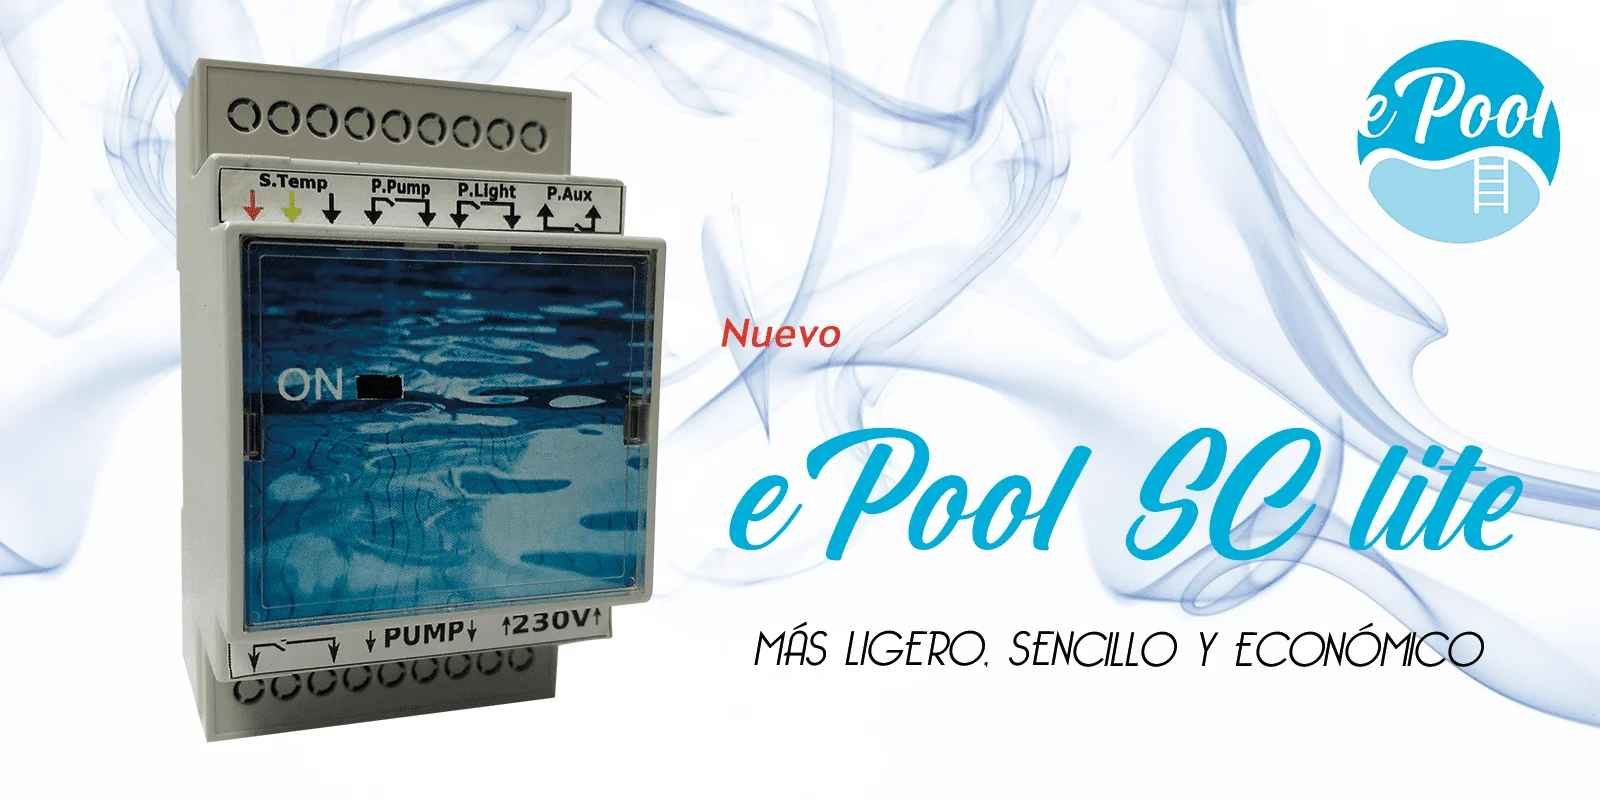 Control y Protección de piscinas con ePOOL SC Lite